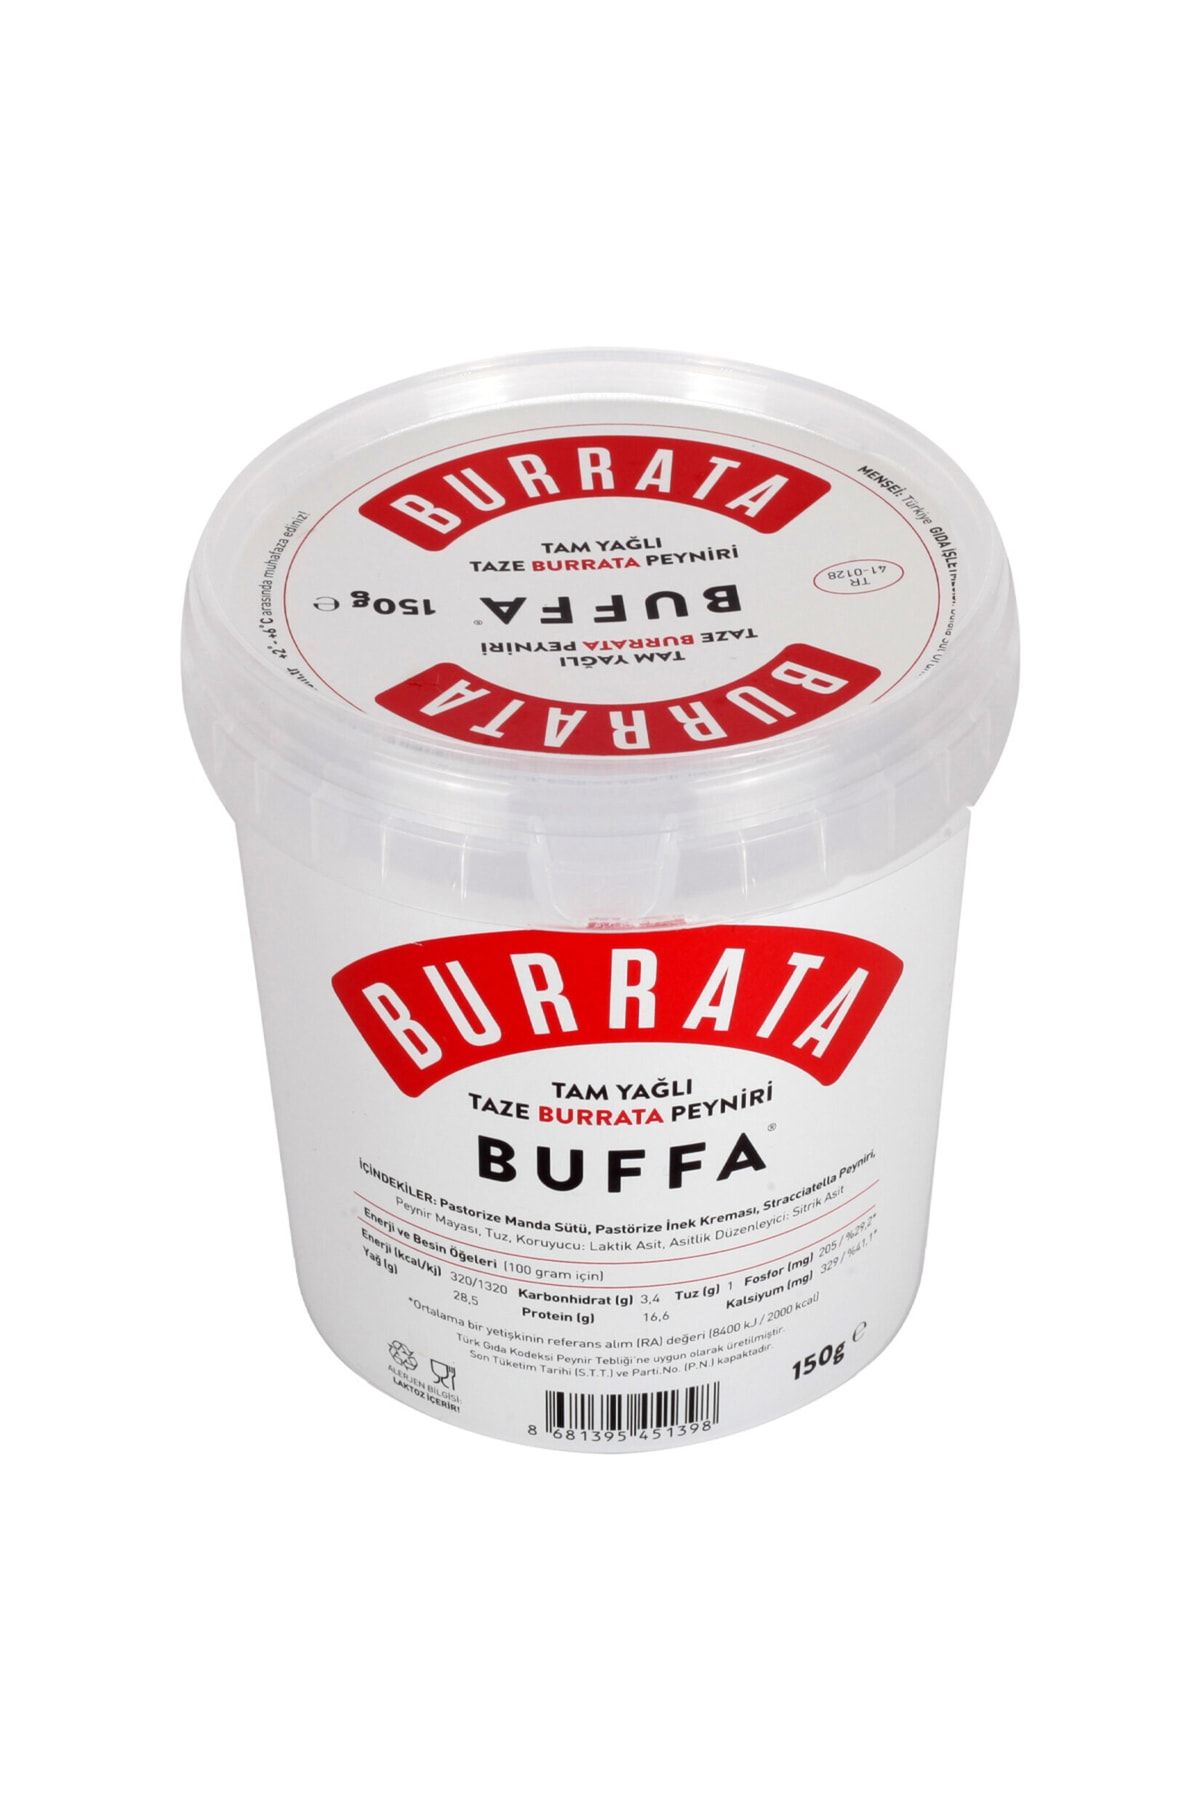 Buffa Tam Yağlı Taze Burrata Peyniri 150g